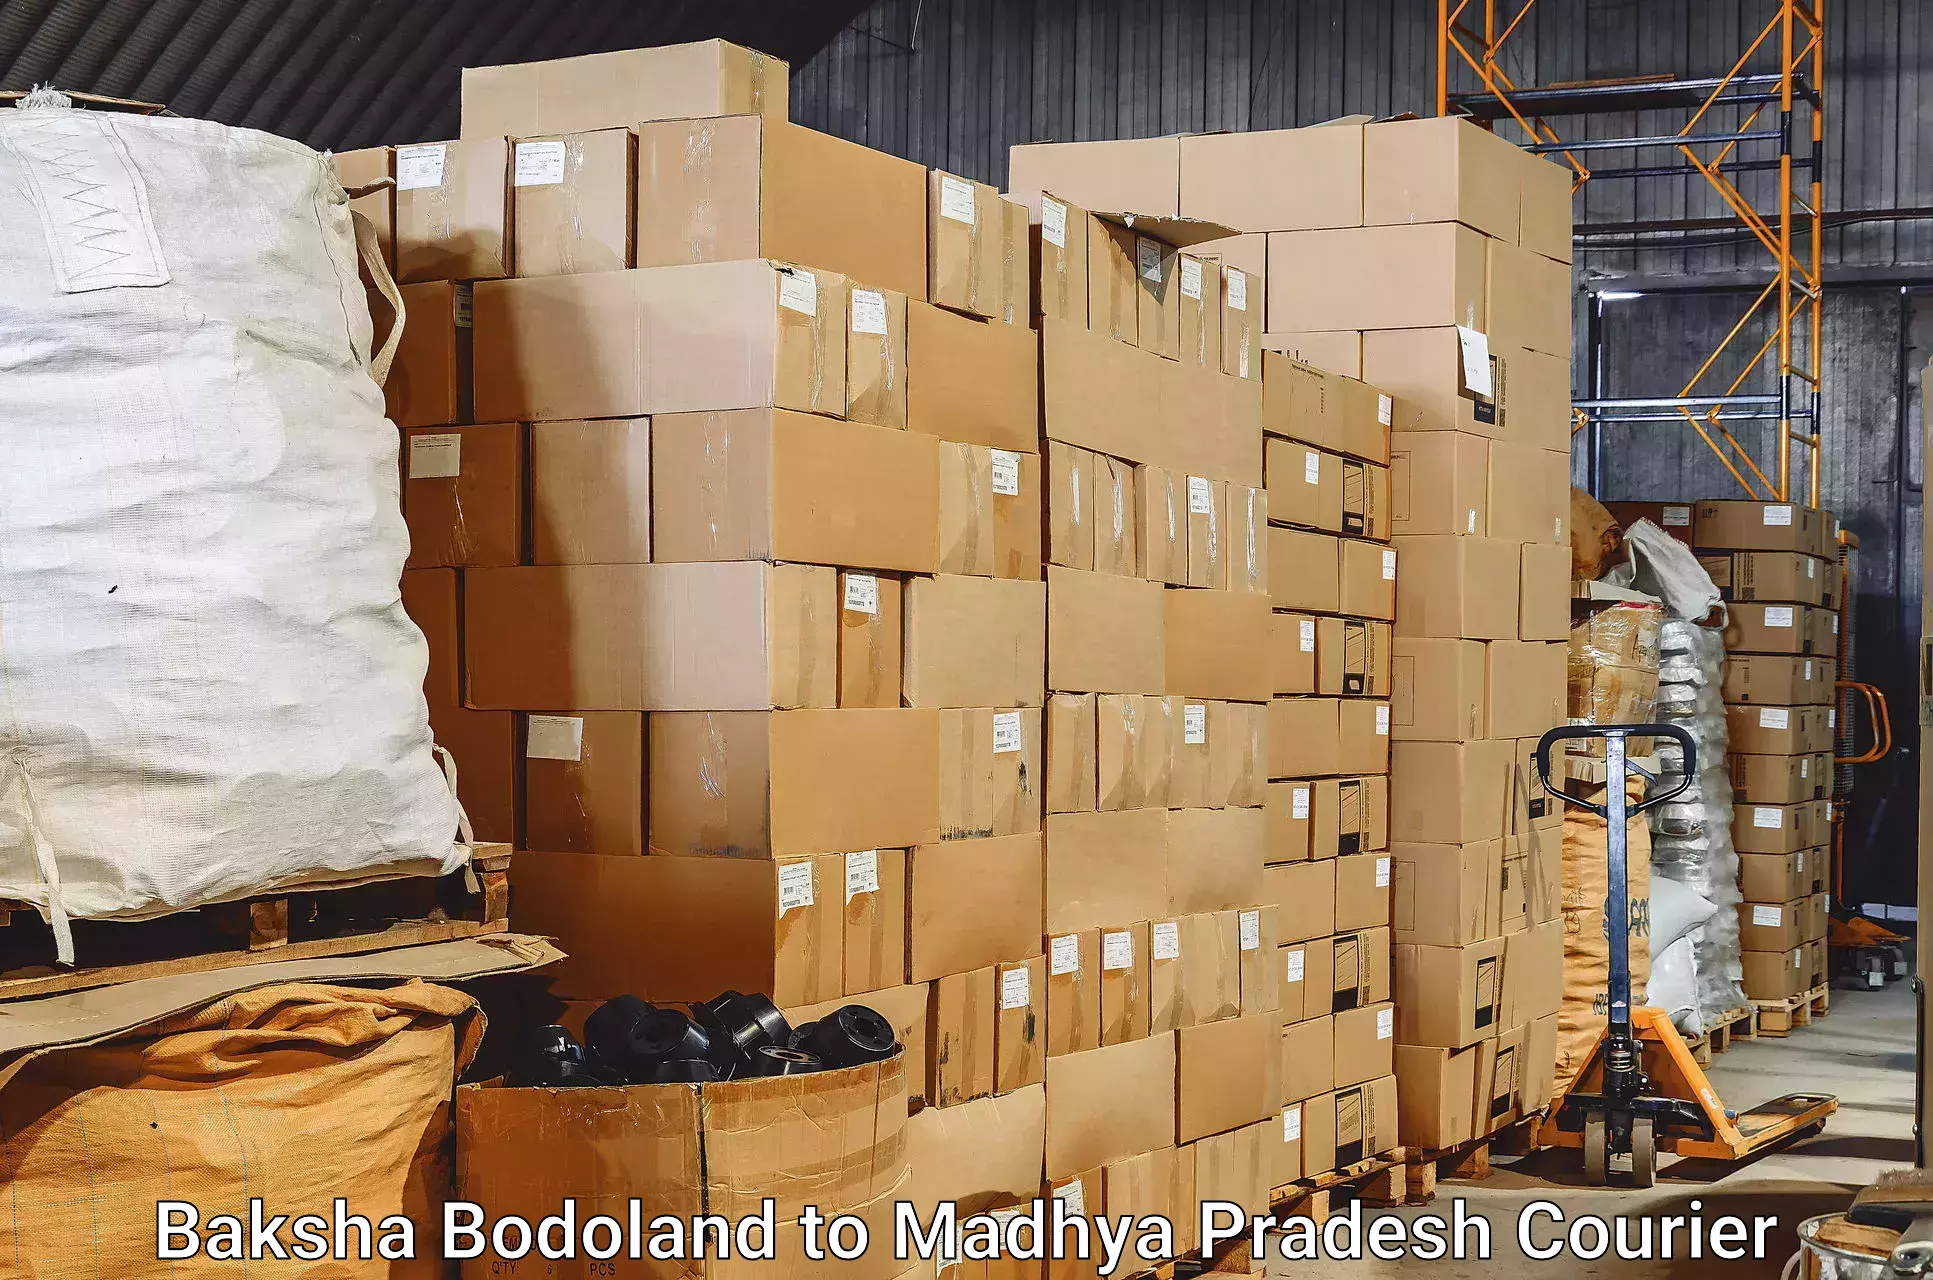 Baggage transport network Baksha Bodoland to Bhopal